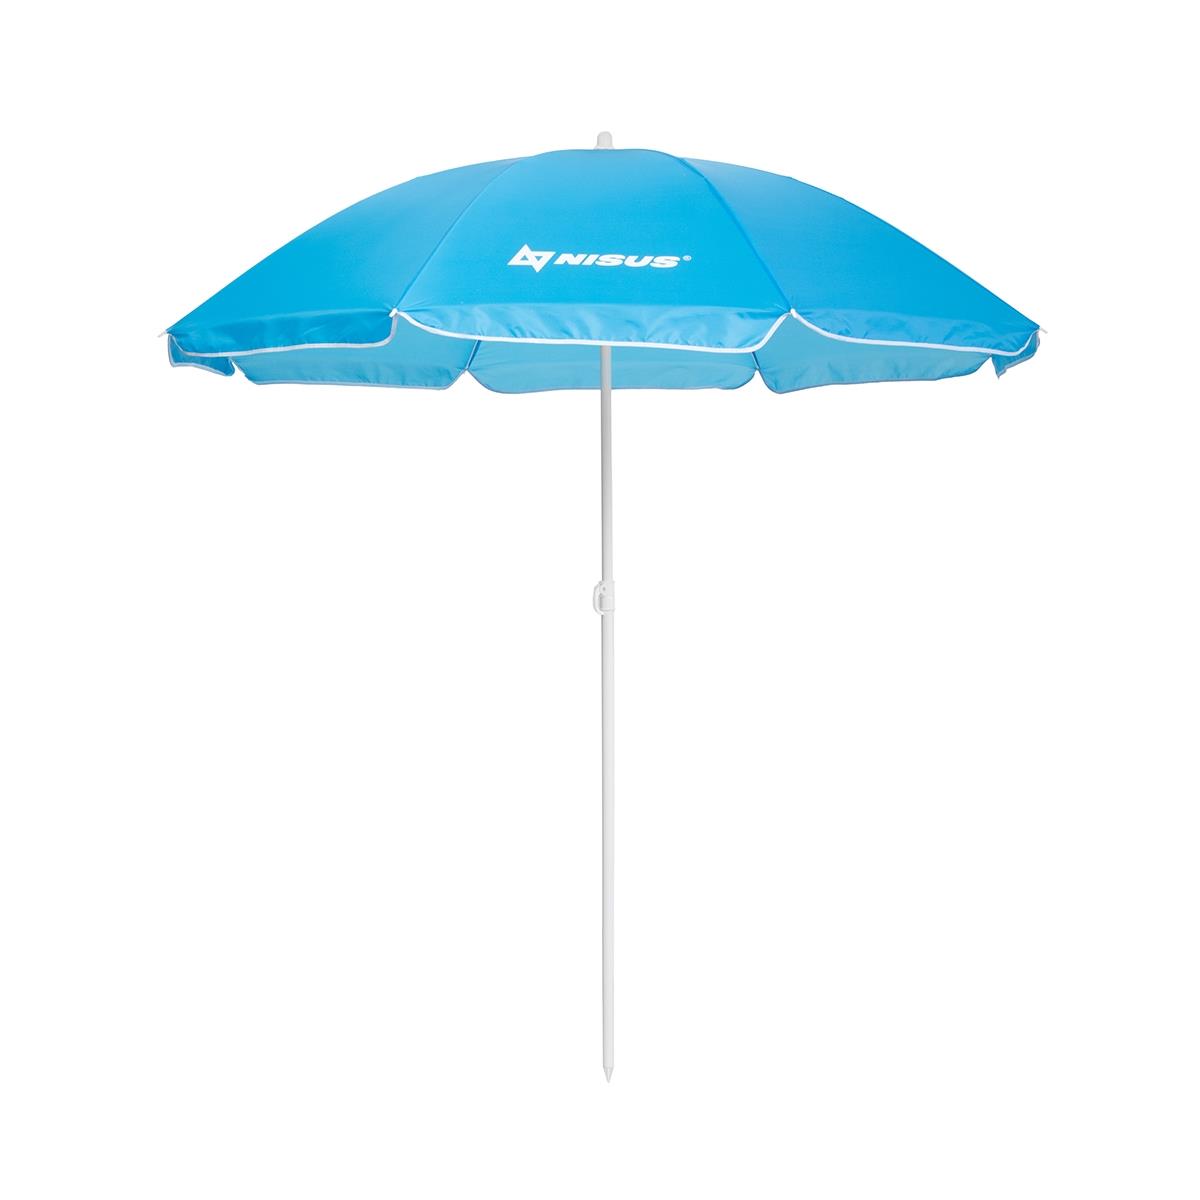 Зонт пляжный d 2,00м прямой голубой (22/25/170Т) NA-200-B  Nisus зонт пляжный d 1 8м с наклоном арбуз 19 22 170т na bu1907 180 w nisus